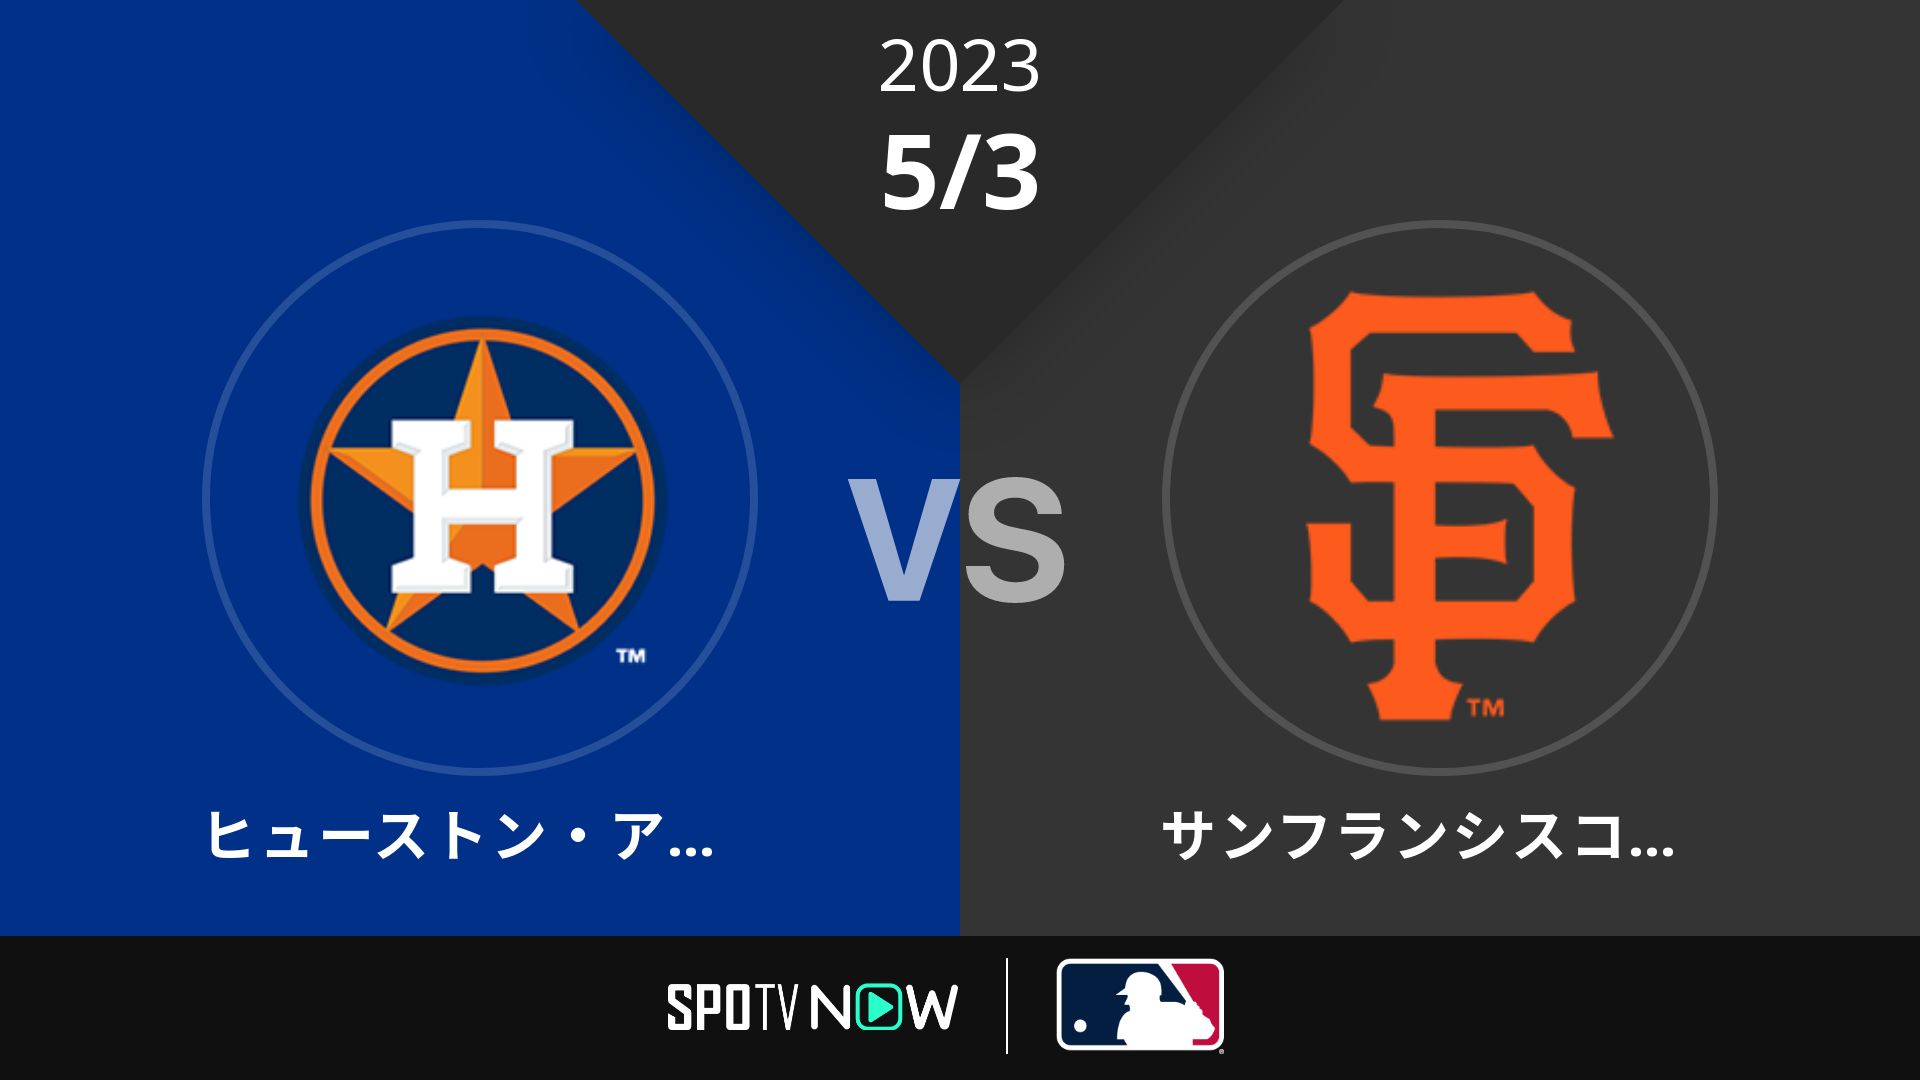 2023/5/3 アストロズ vs ジャイアンツ [MLB]